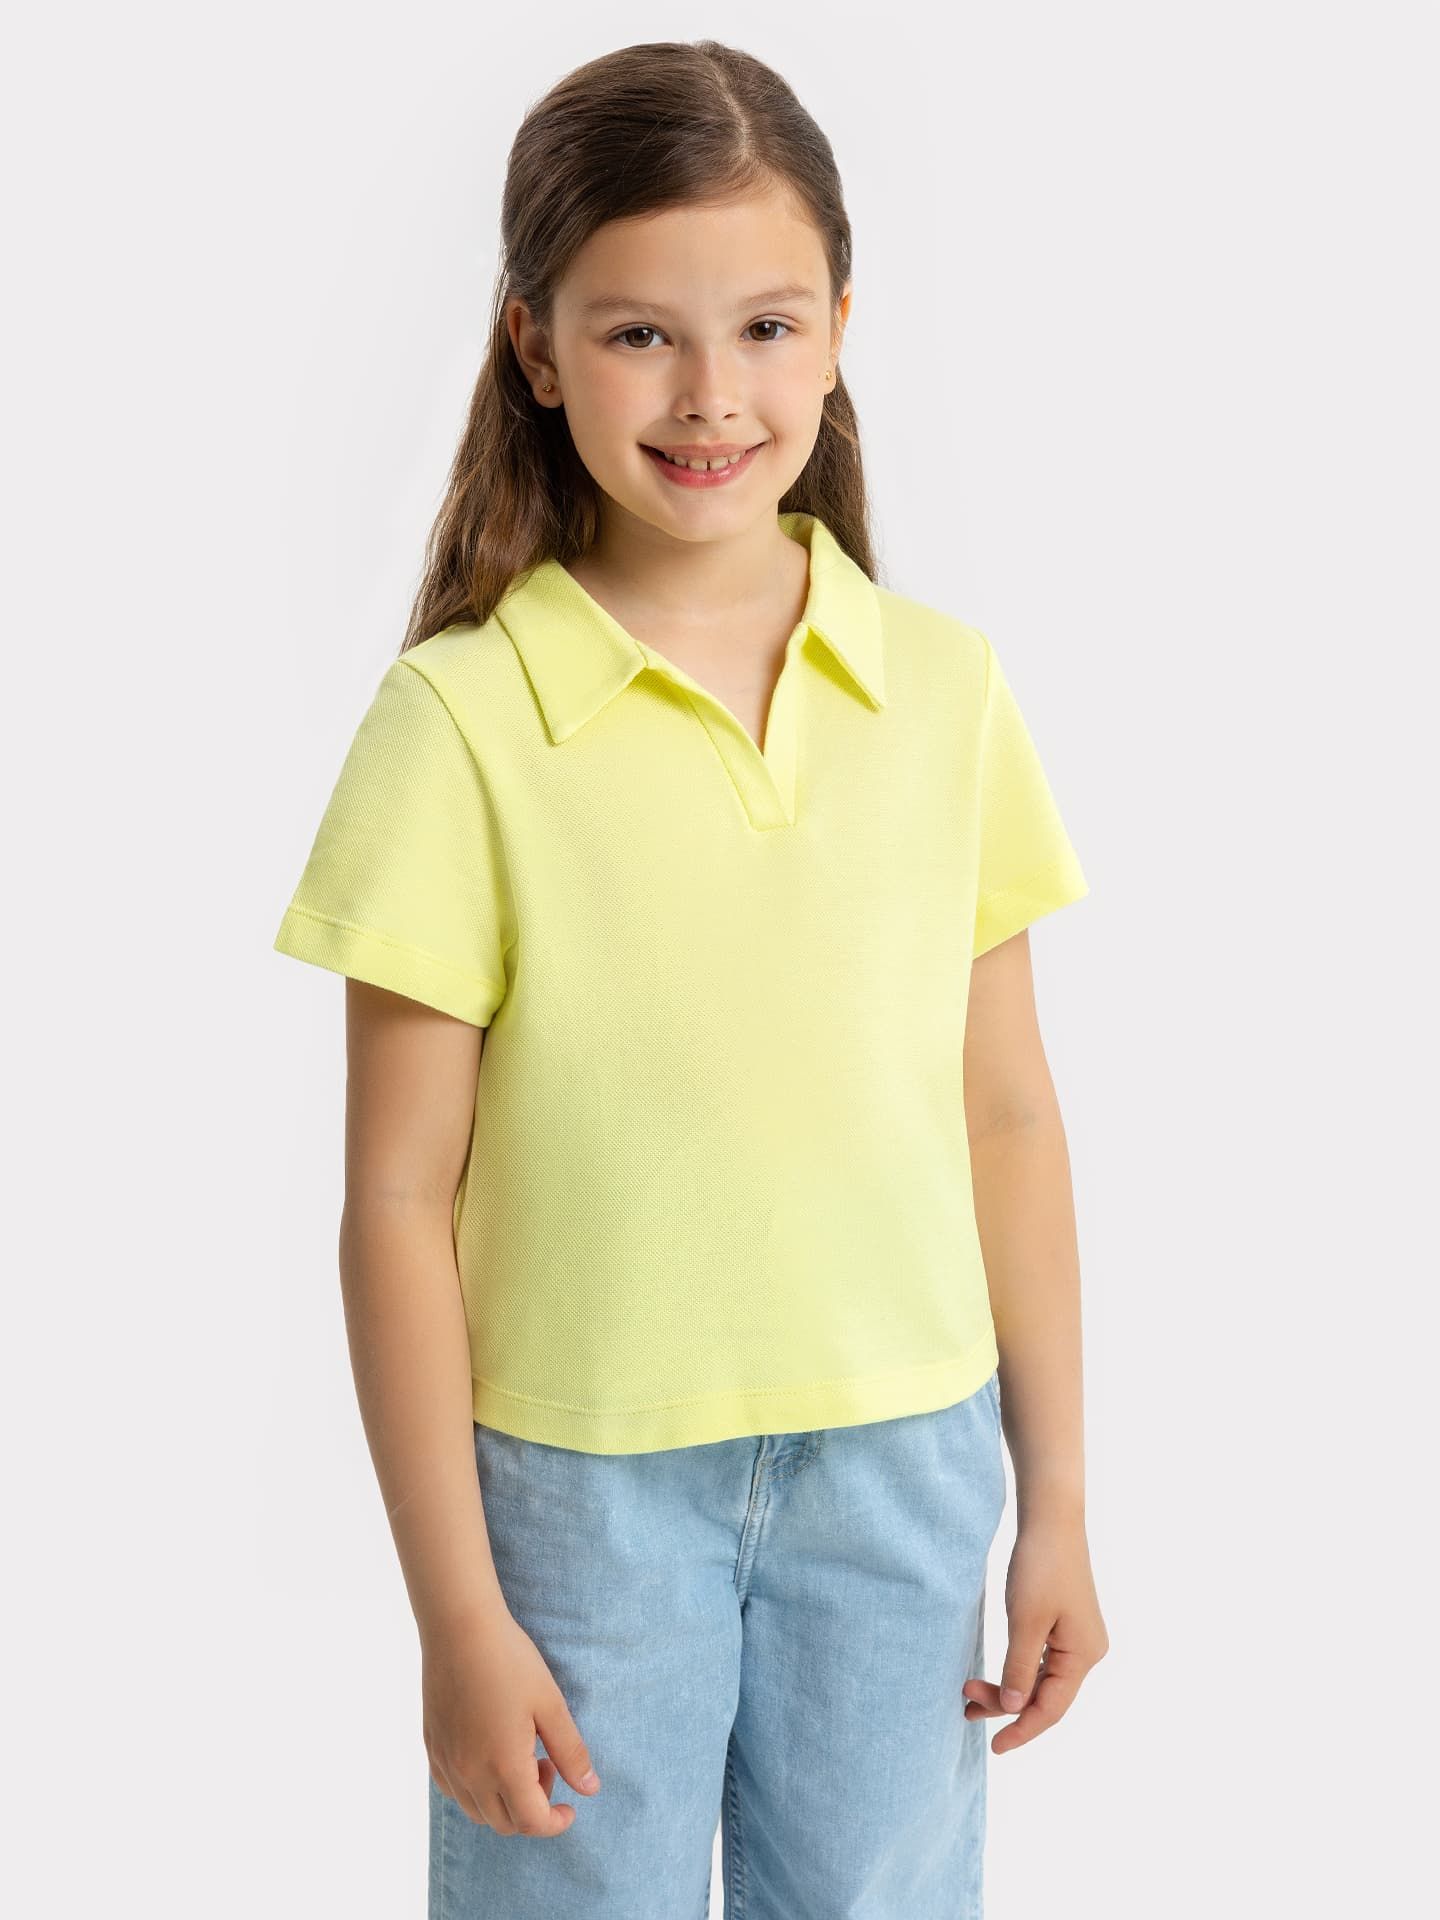 Джемпер с воротником в желтом цвете для девочек